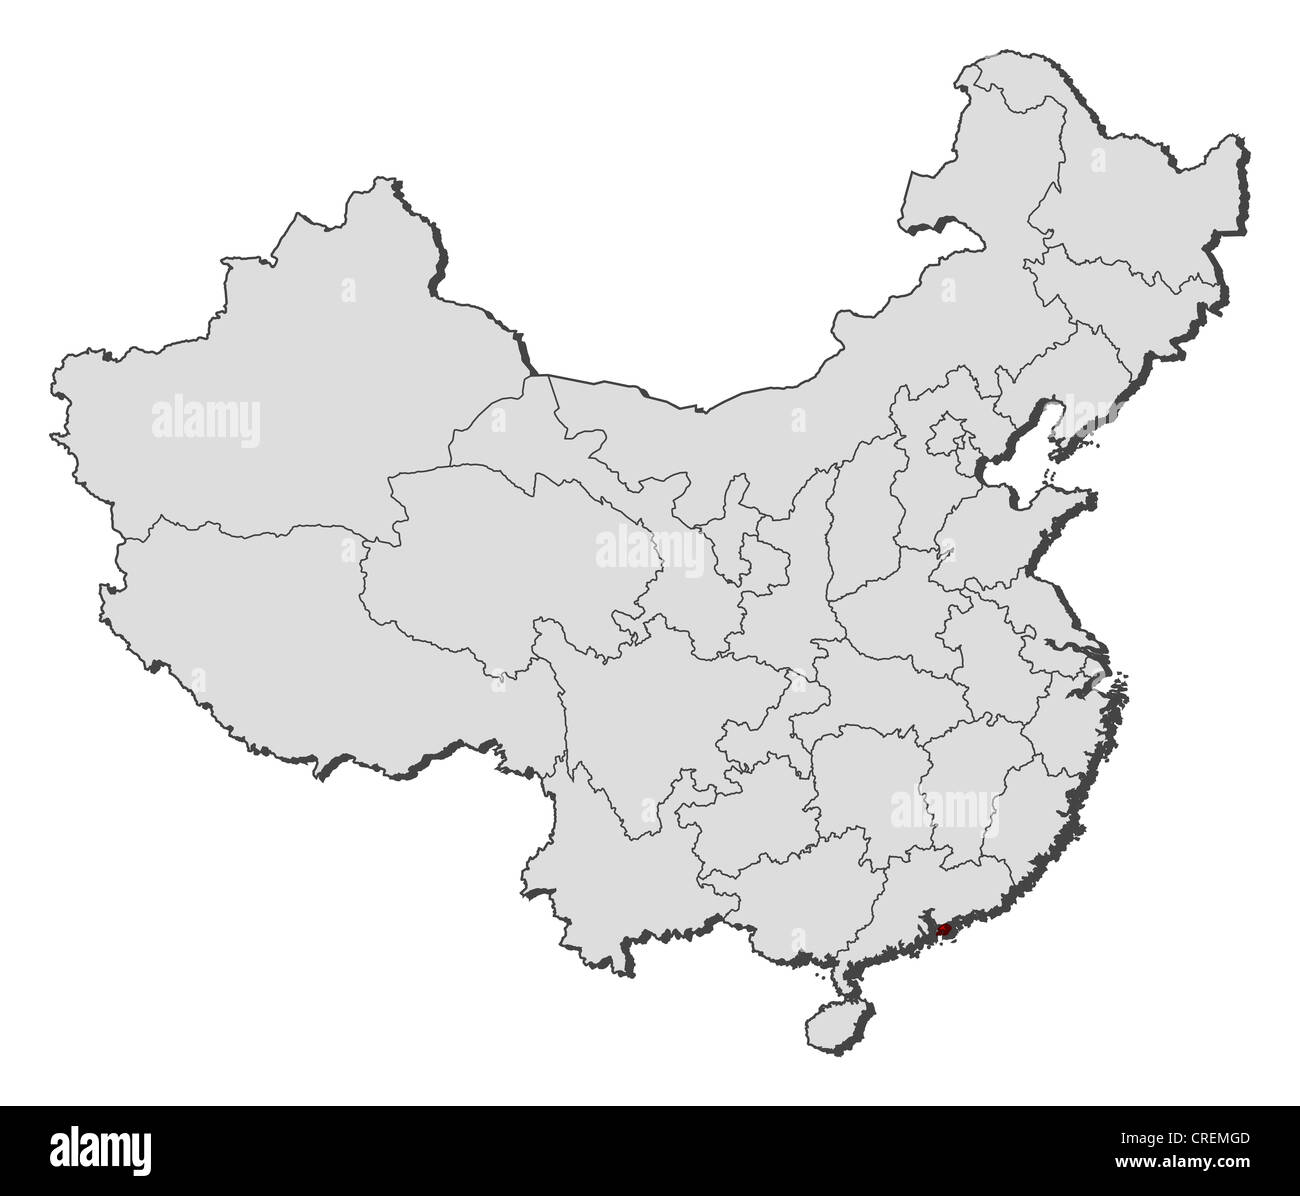 Mappa politica della Cina con le diverse province in cui Hong Kong è evidenziata. Foto Stock